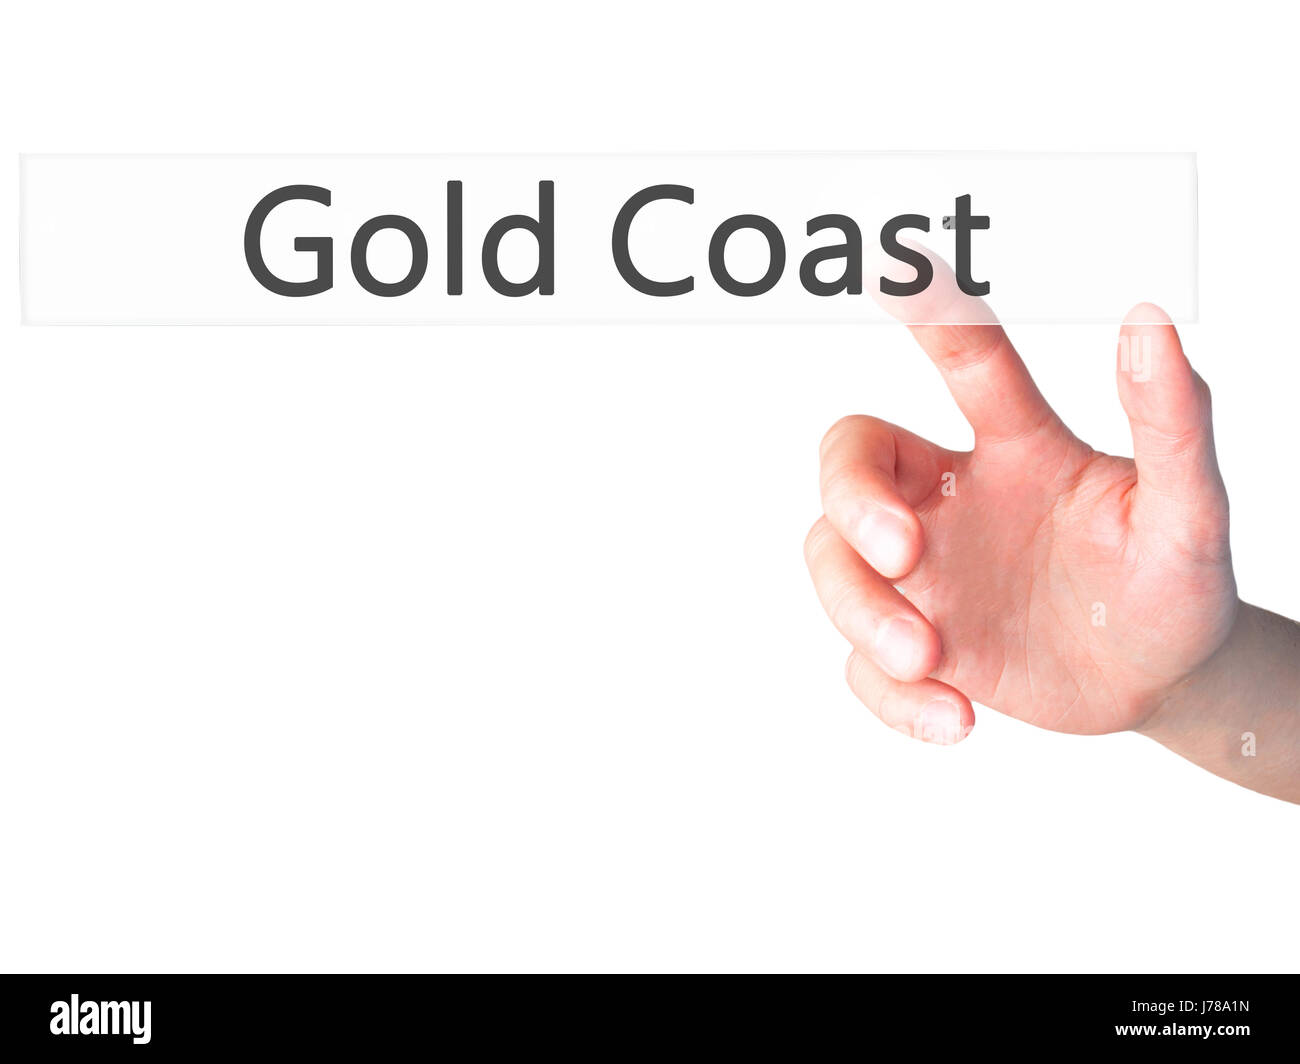 Gold Coast - Hand drücken einer Taste auf unscharfen Hintergrund Konzept. Wirtschaft, Technologie, Internet-Konzept. Stock Foto Stockfoto